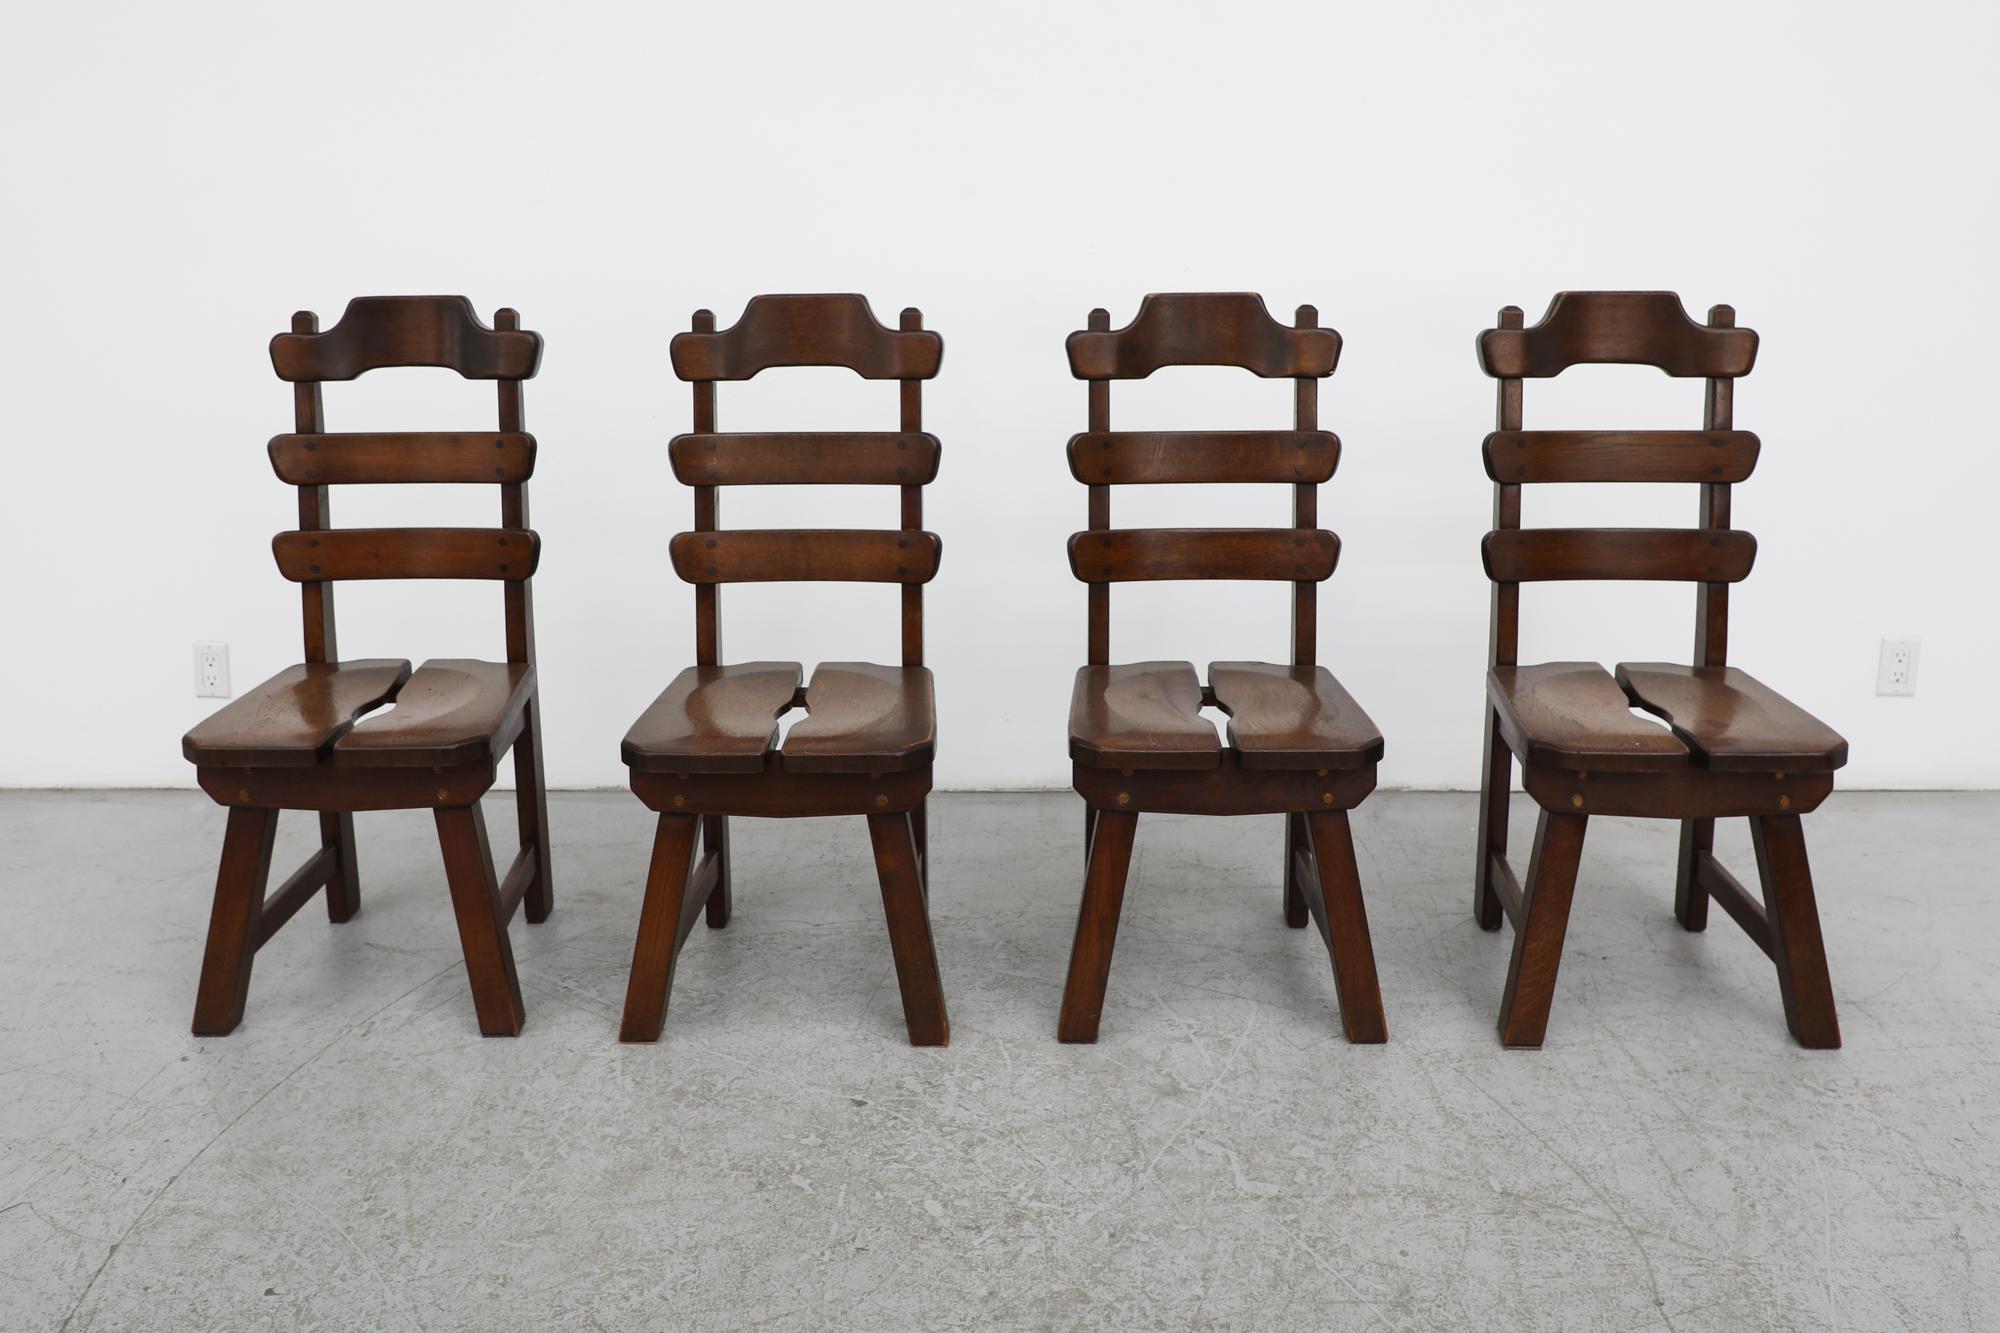 1960's, ensemble belge de 4 chaises d'appoint ou de salle à manger à dossier échelonné de style brutaliste. Fabriqué en chêne massif teinté foncé. Ces chaises présentent un design brutaliste classique avec des sièges divisés et de magnifiques